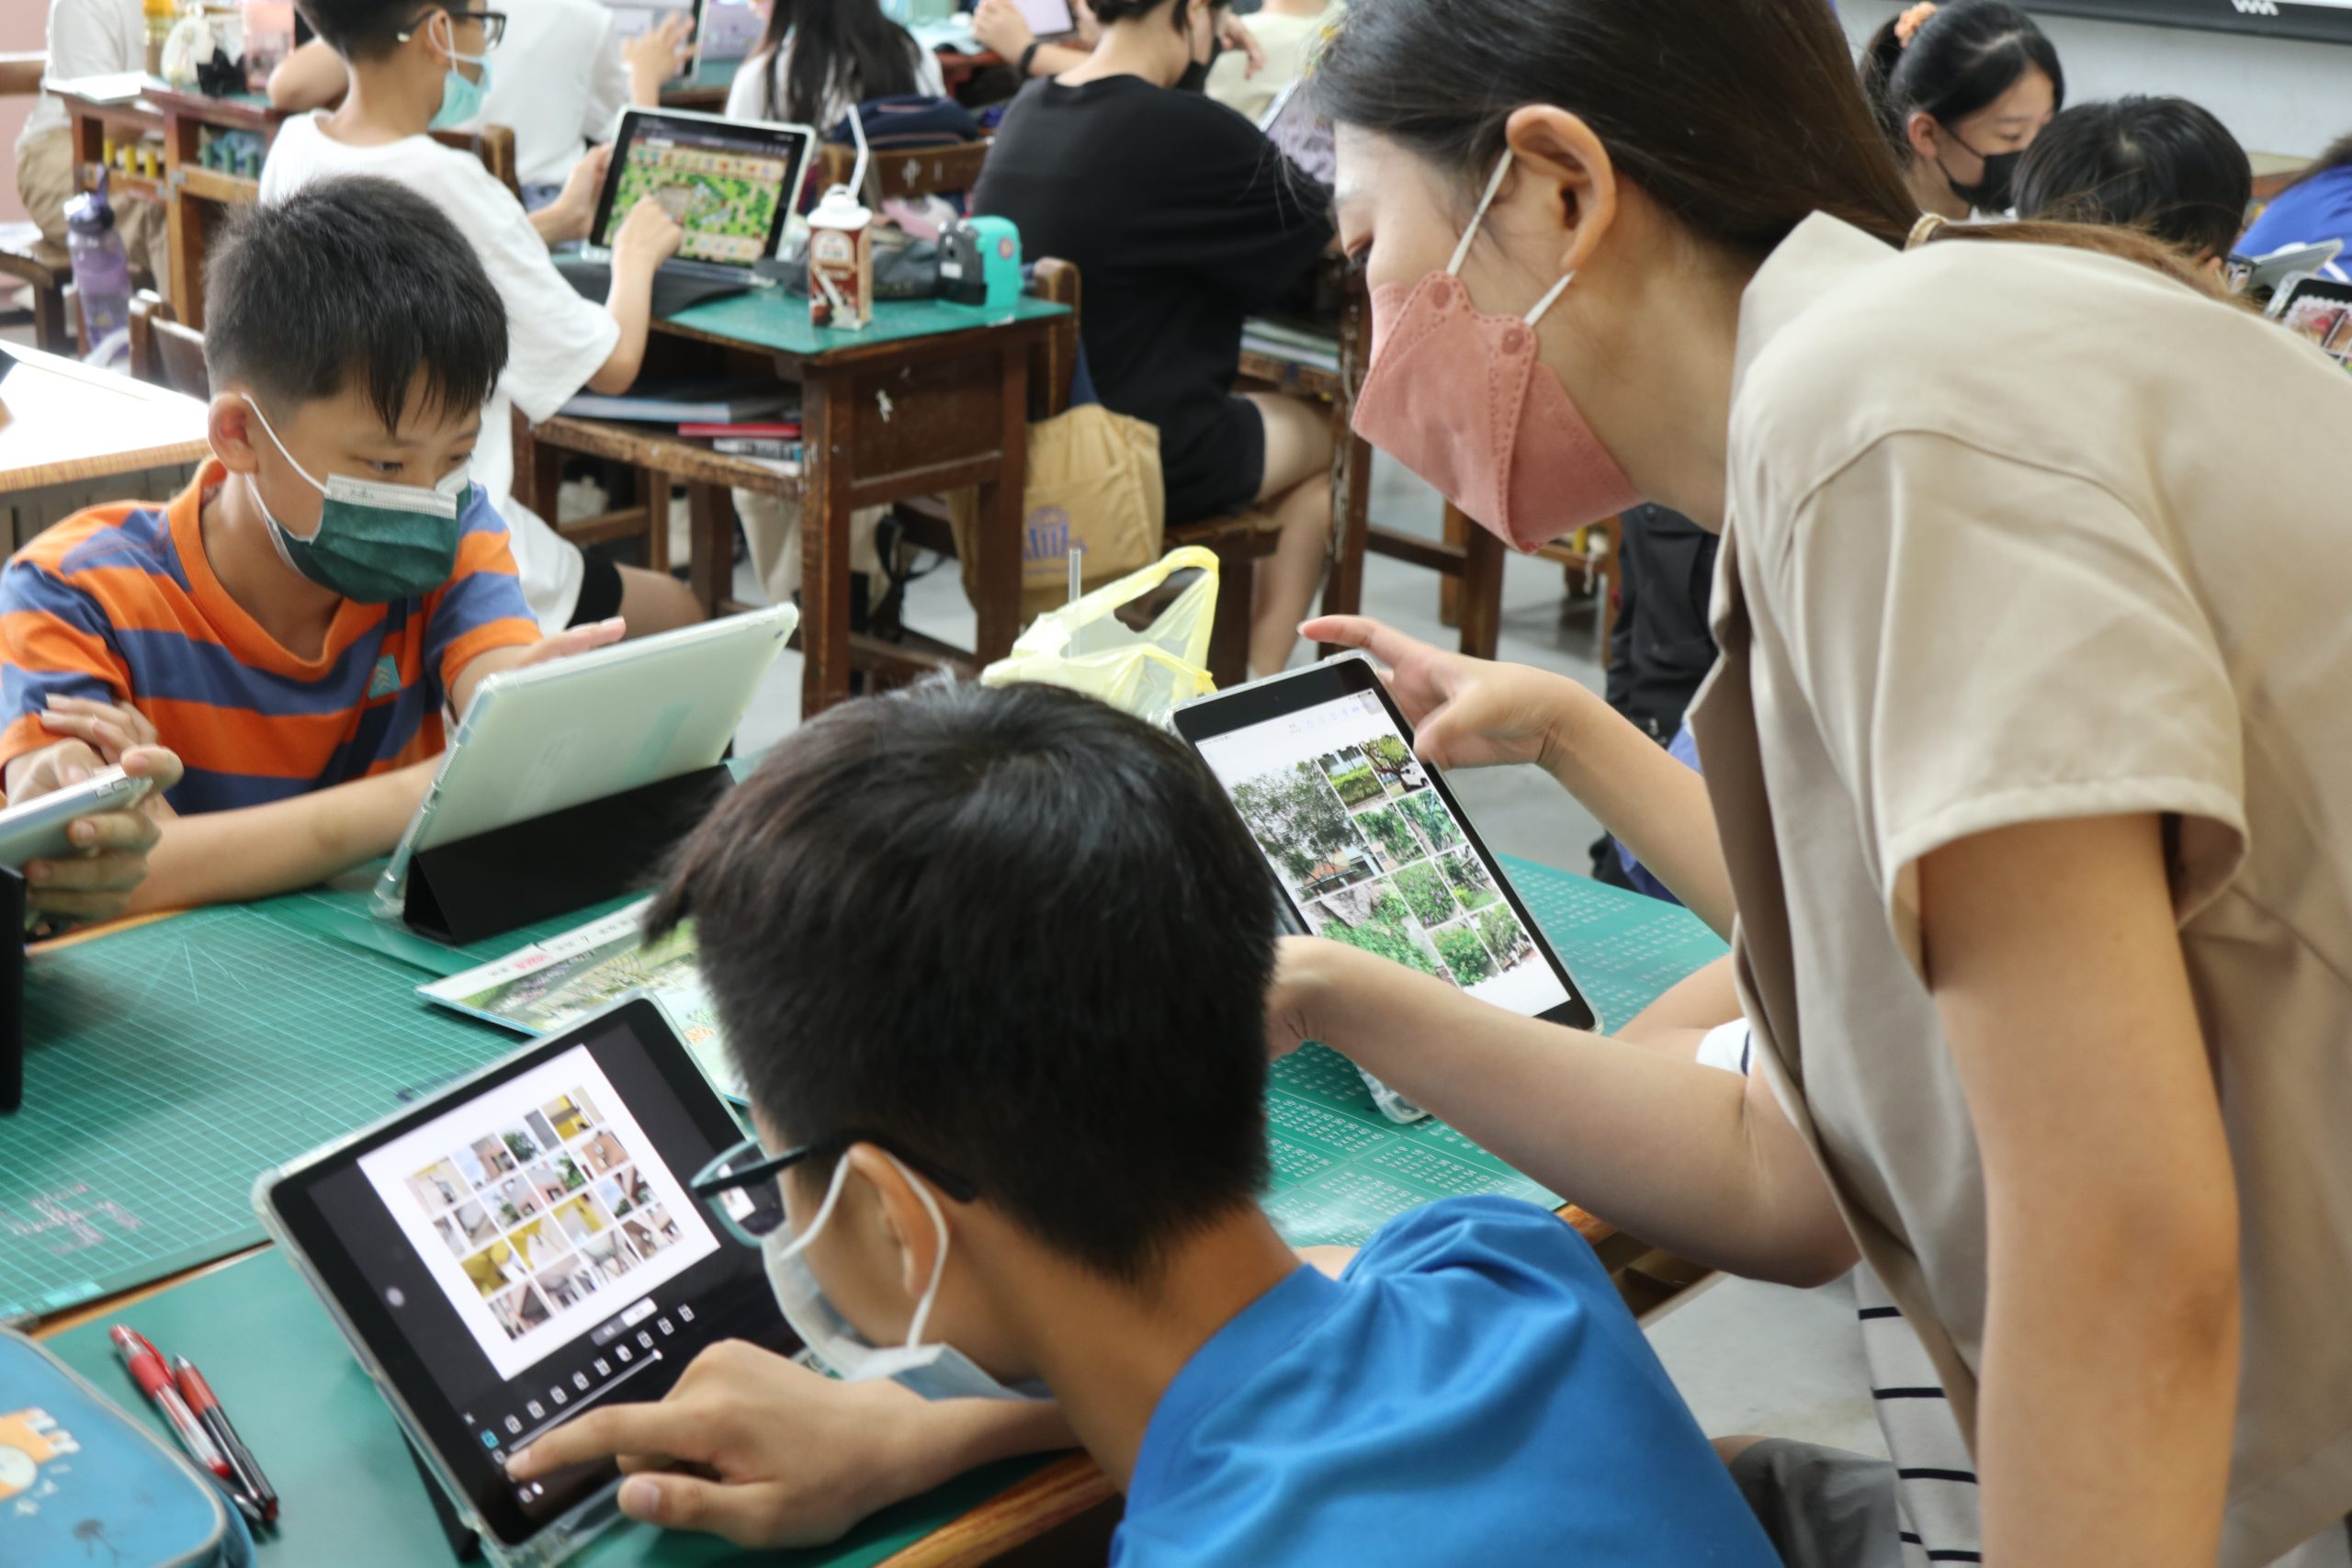 111學年度第二學期於雲林縣斗六市鎮西國民小學施辦自拍拼圖課程實作紀錄系列照片共21張